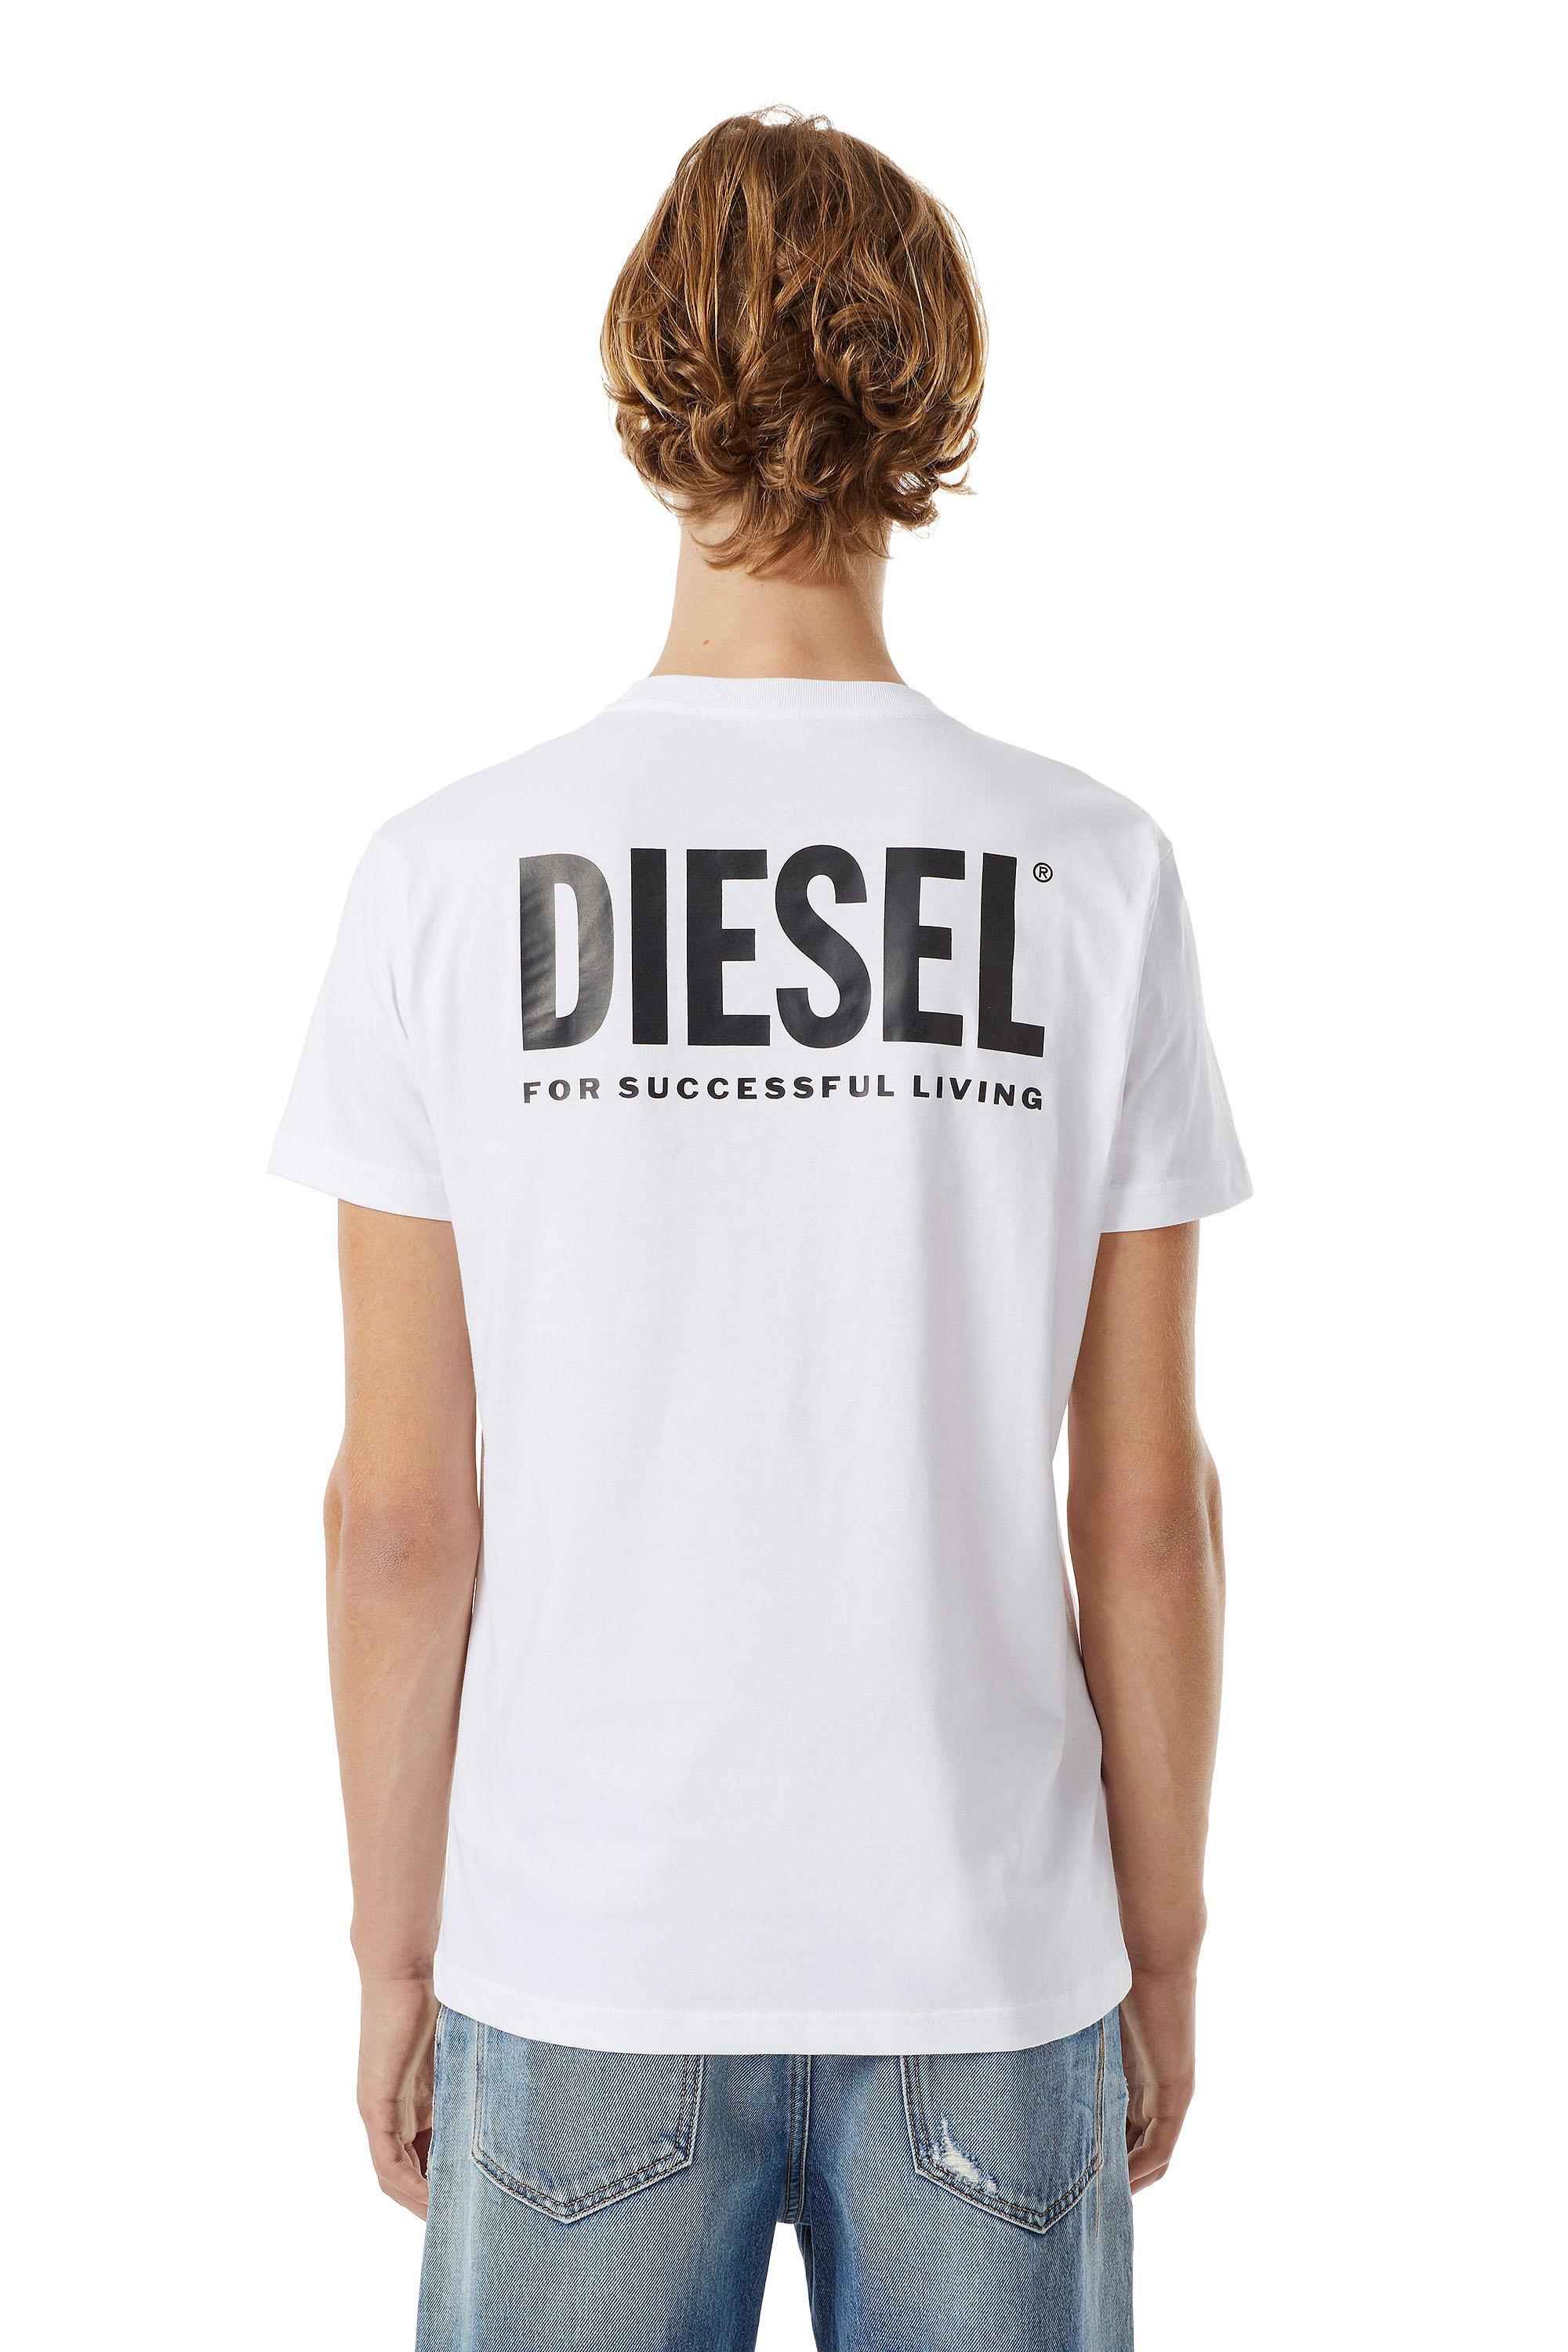 Diesel - LR-T-DIEGO-VIC,  - Image 3